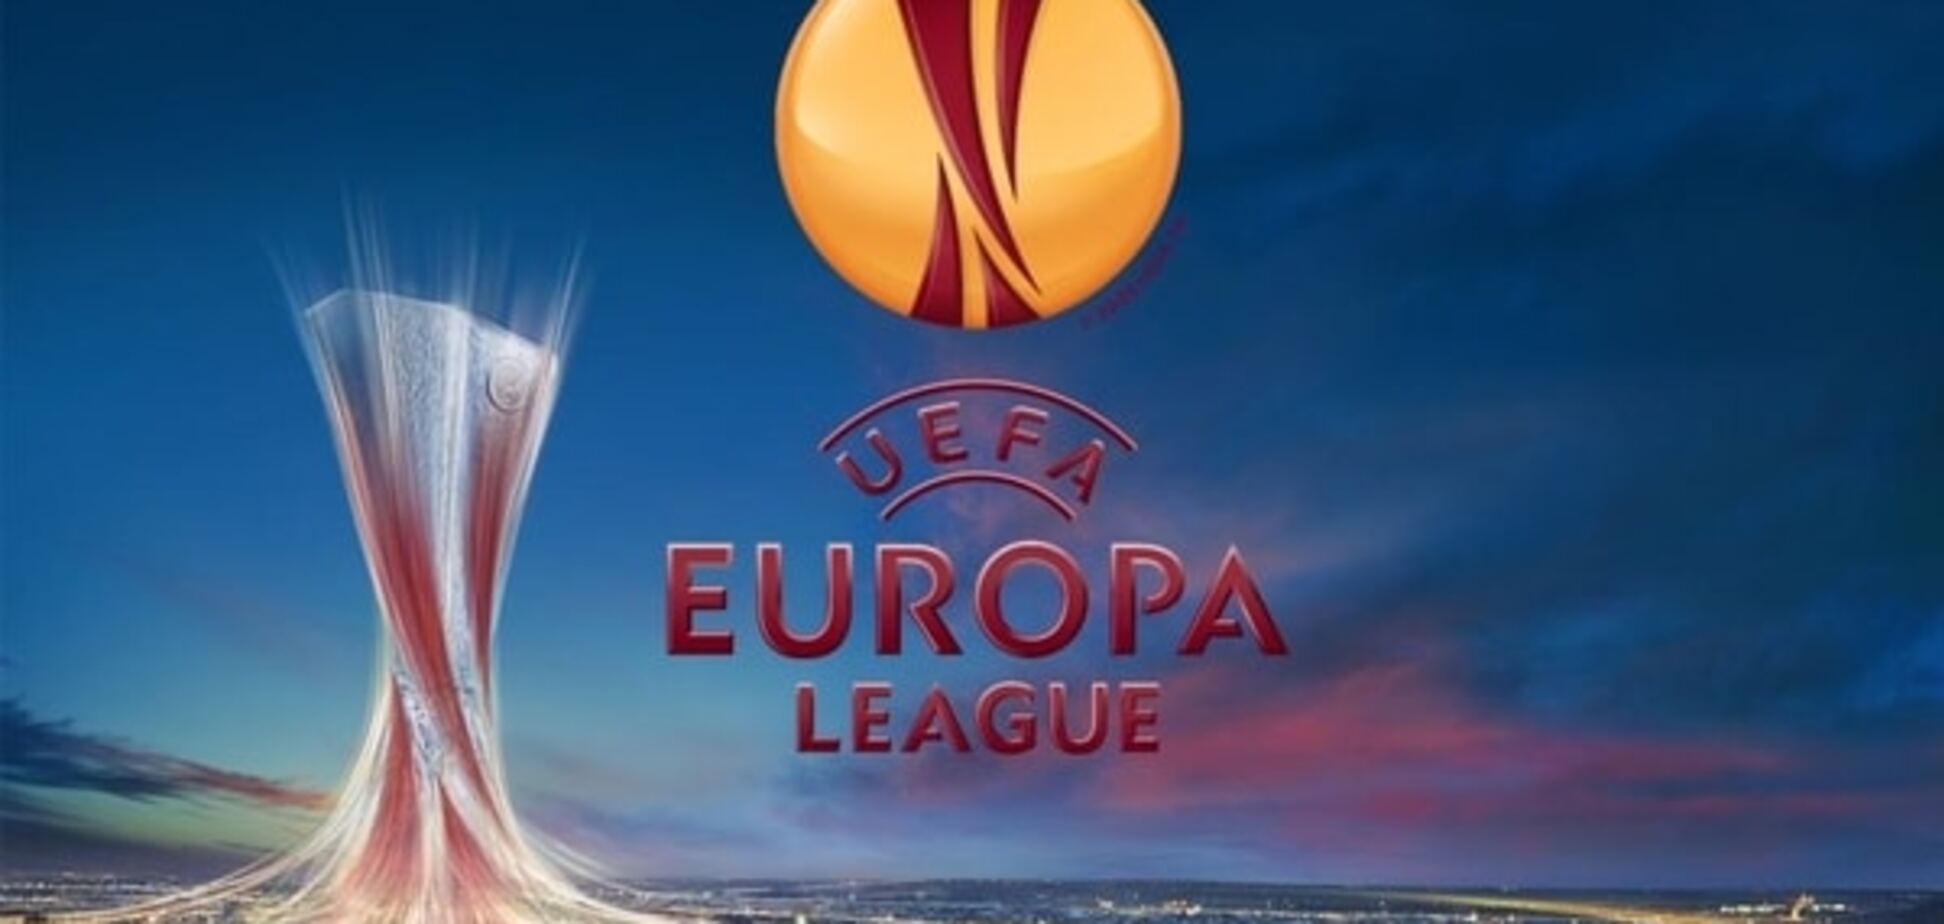 'Днепр' против всех: результаты жеребьевки Лиги Европы